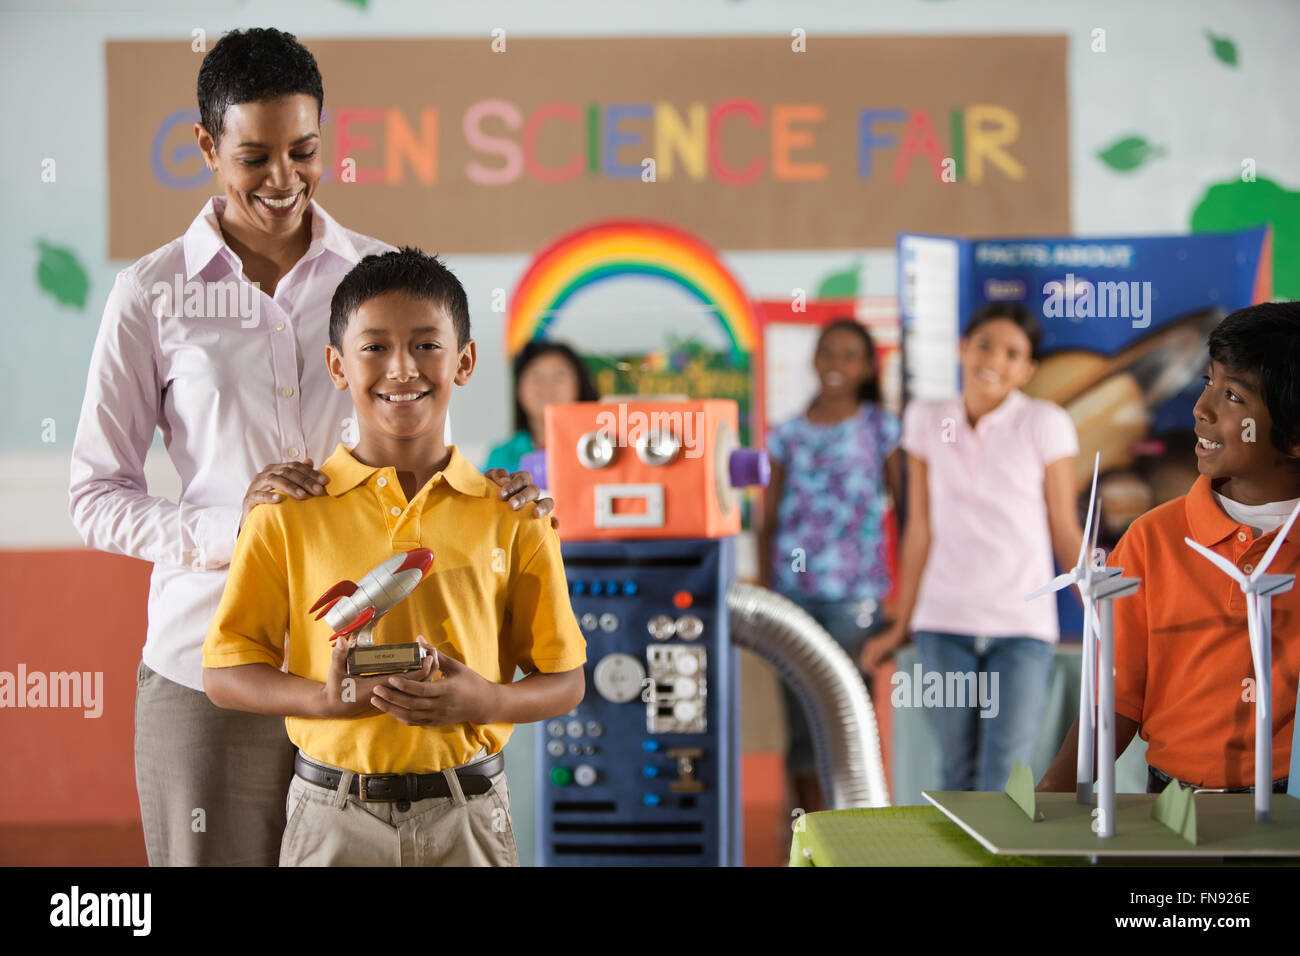 Ein Junge hielt eine Rakete Trophäe stehen vor der Klasse, mit einem Erwachsenen, eine Trophäe auf der Green Science Fair zu gewinnen. Stockfoto